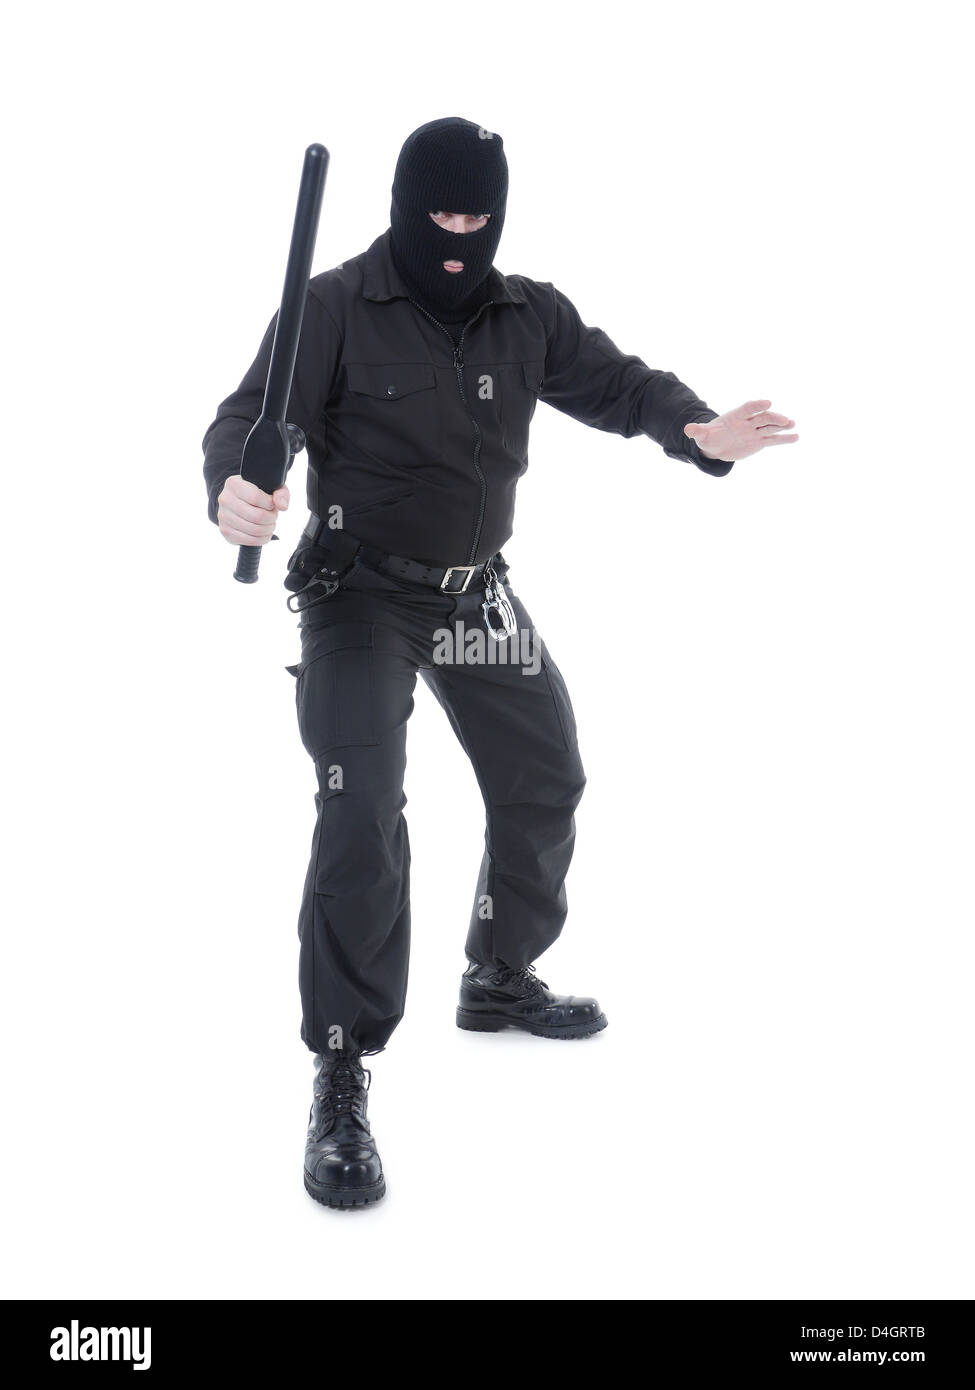 La police anti-terroriste mec uniforme noir et black mask holding police club fermement dans une main prêt pour l'action Banque D'Images